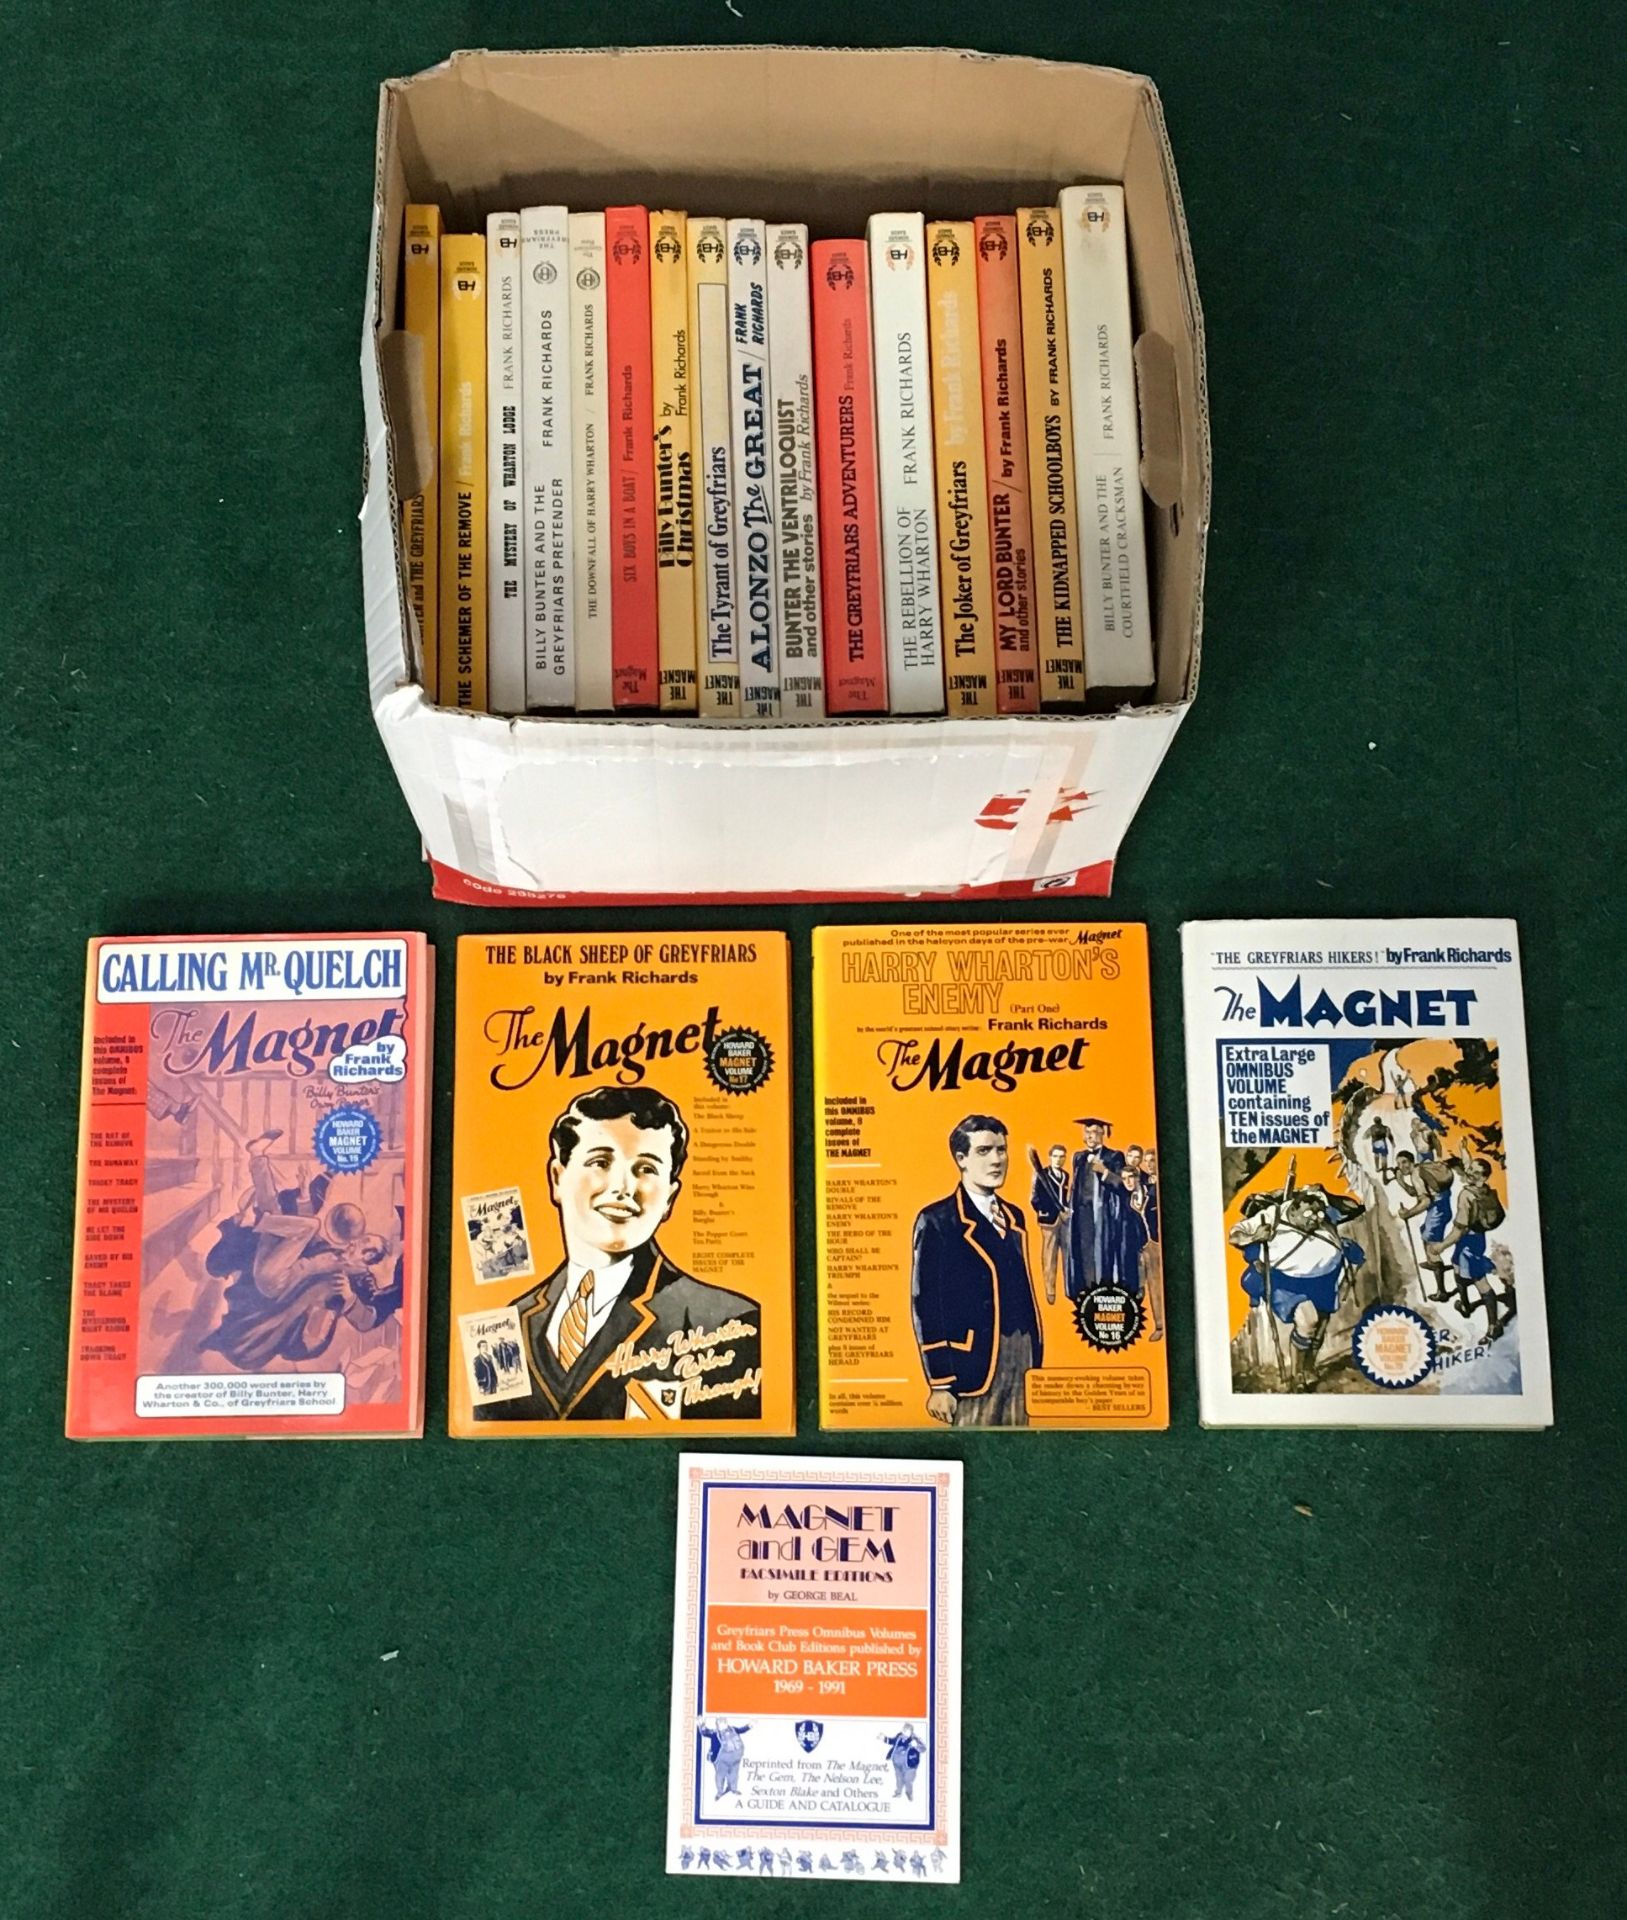 22 x The Magnet Howard Baker books by Frank Richards.